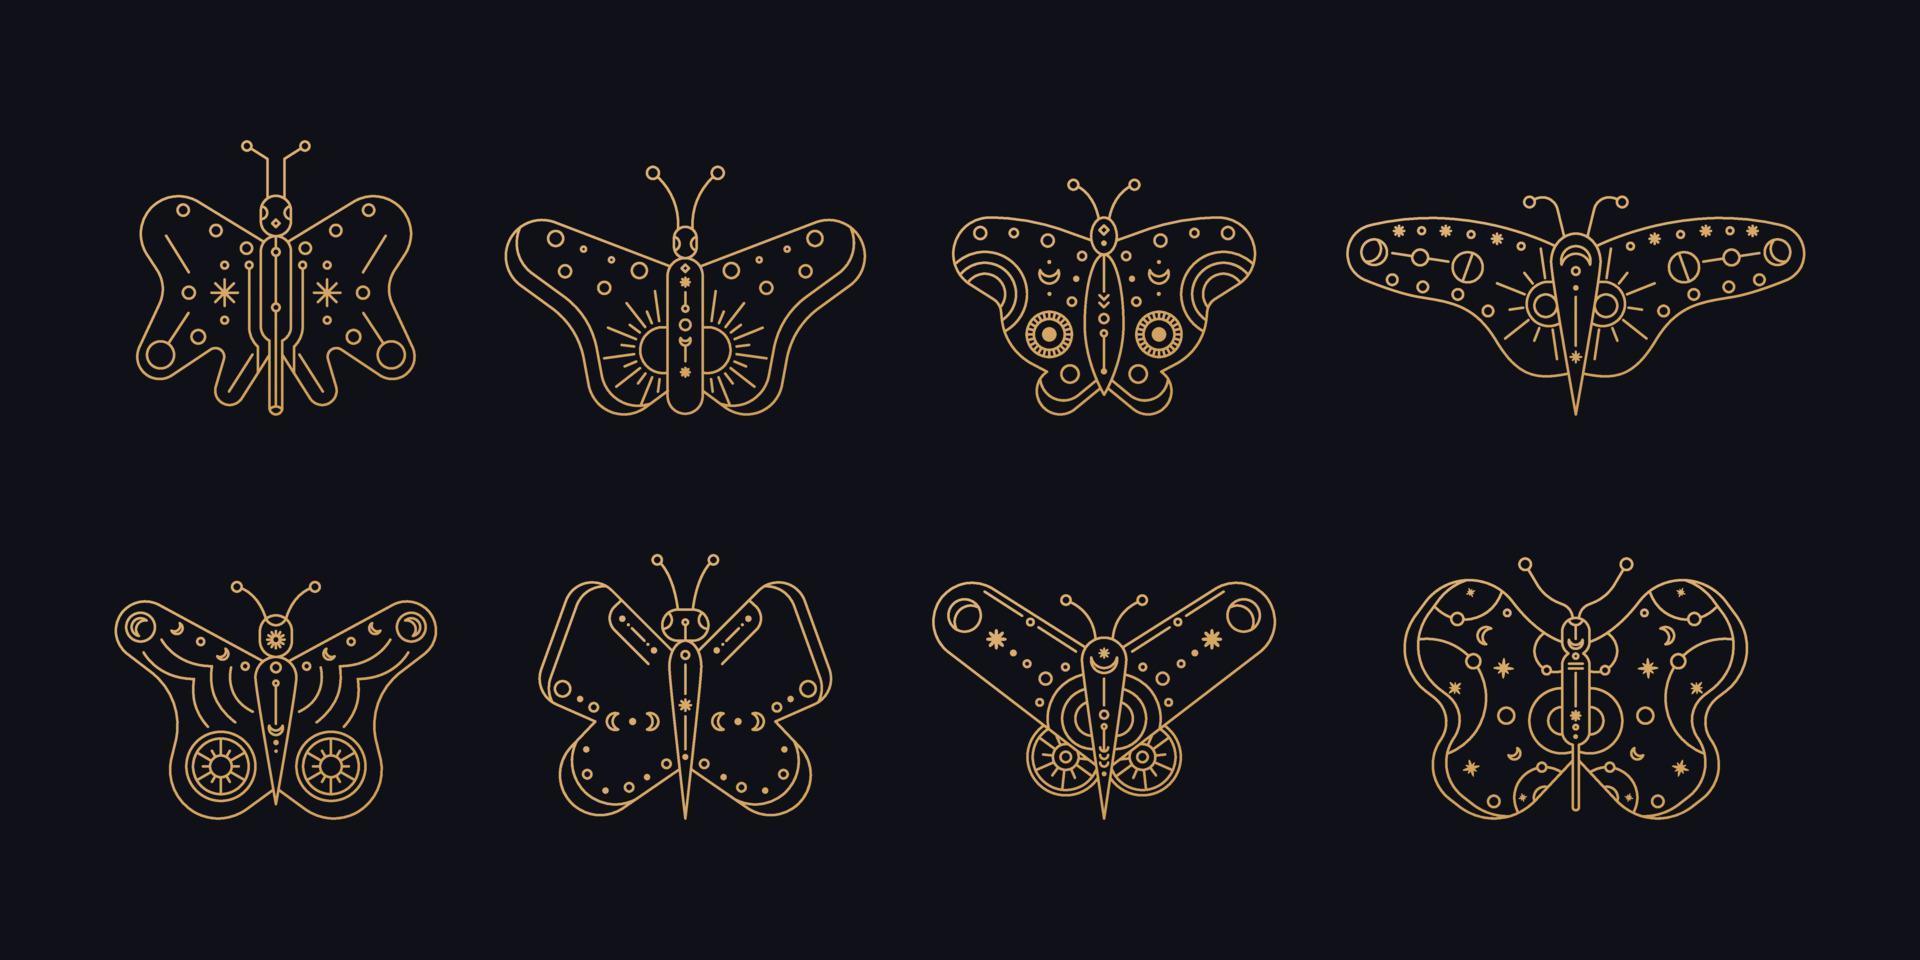 arte de linha de borboleta. conjunto de arte de linha de borboleta. símbolos lineares boho mínimos. elemento místico celestial. ilustração em vetor linha arte.